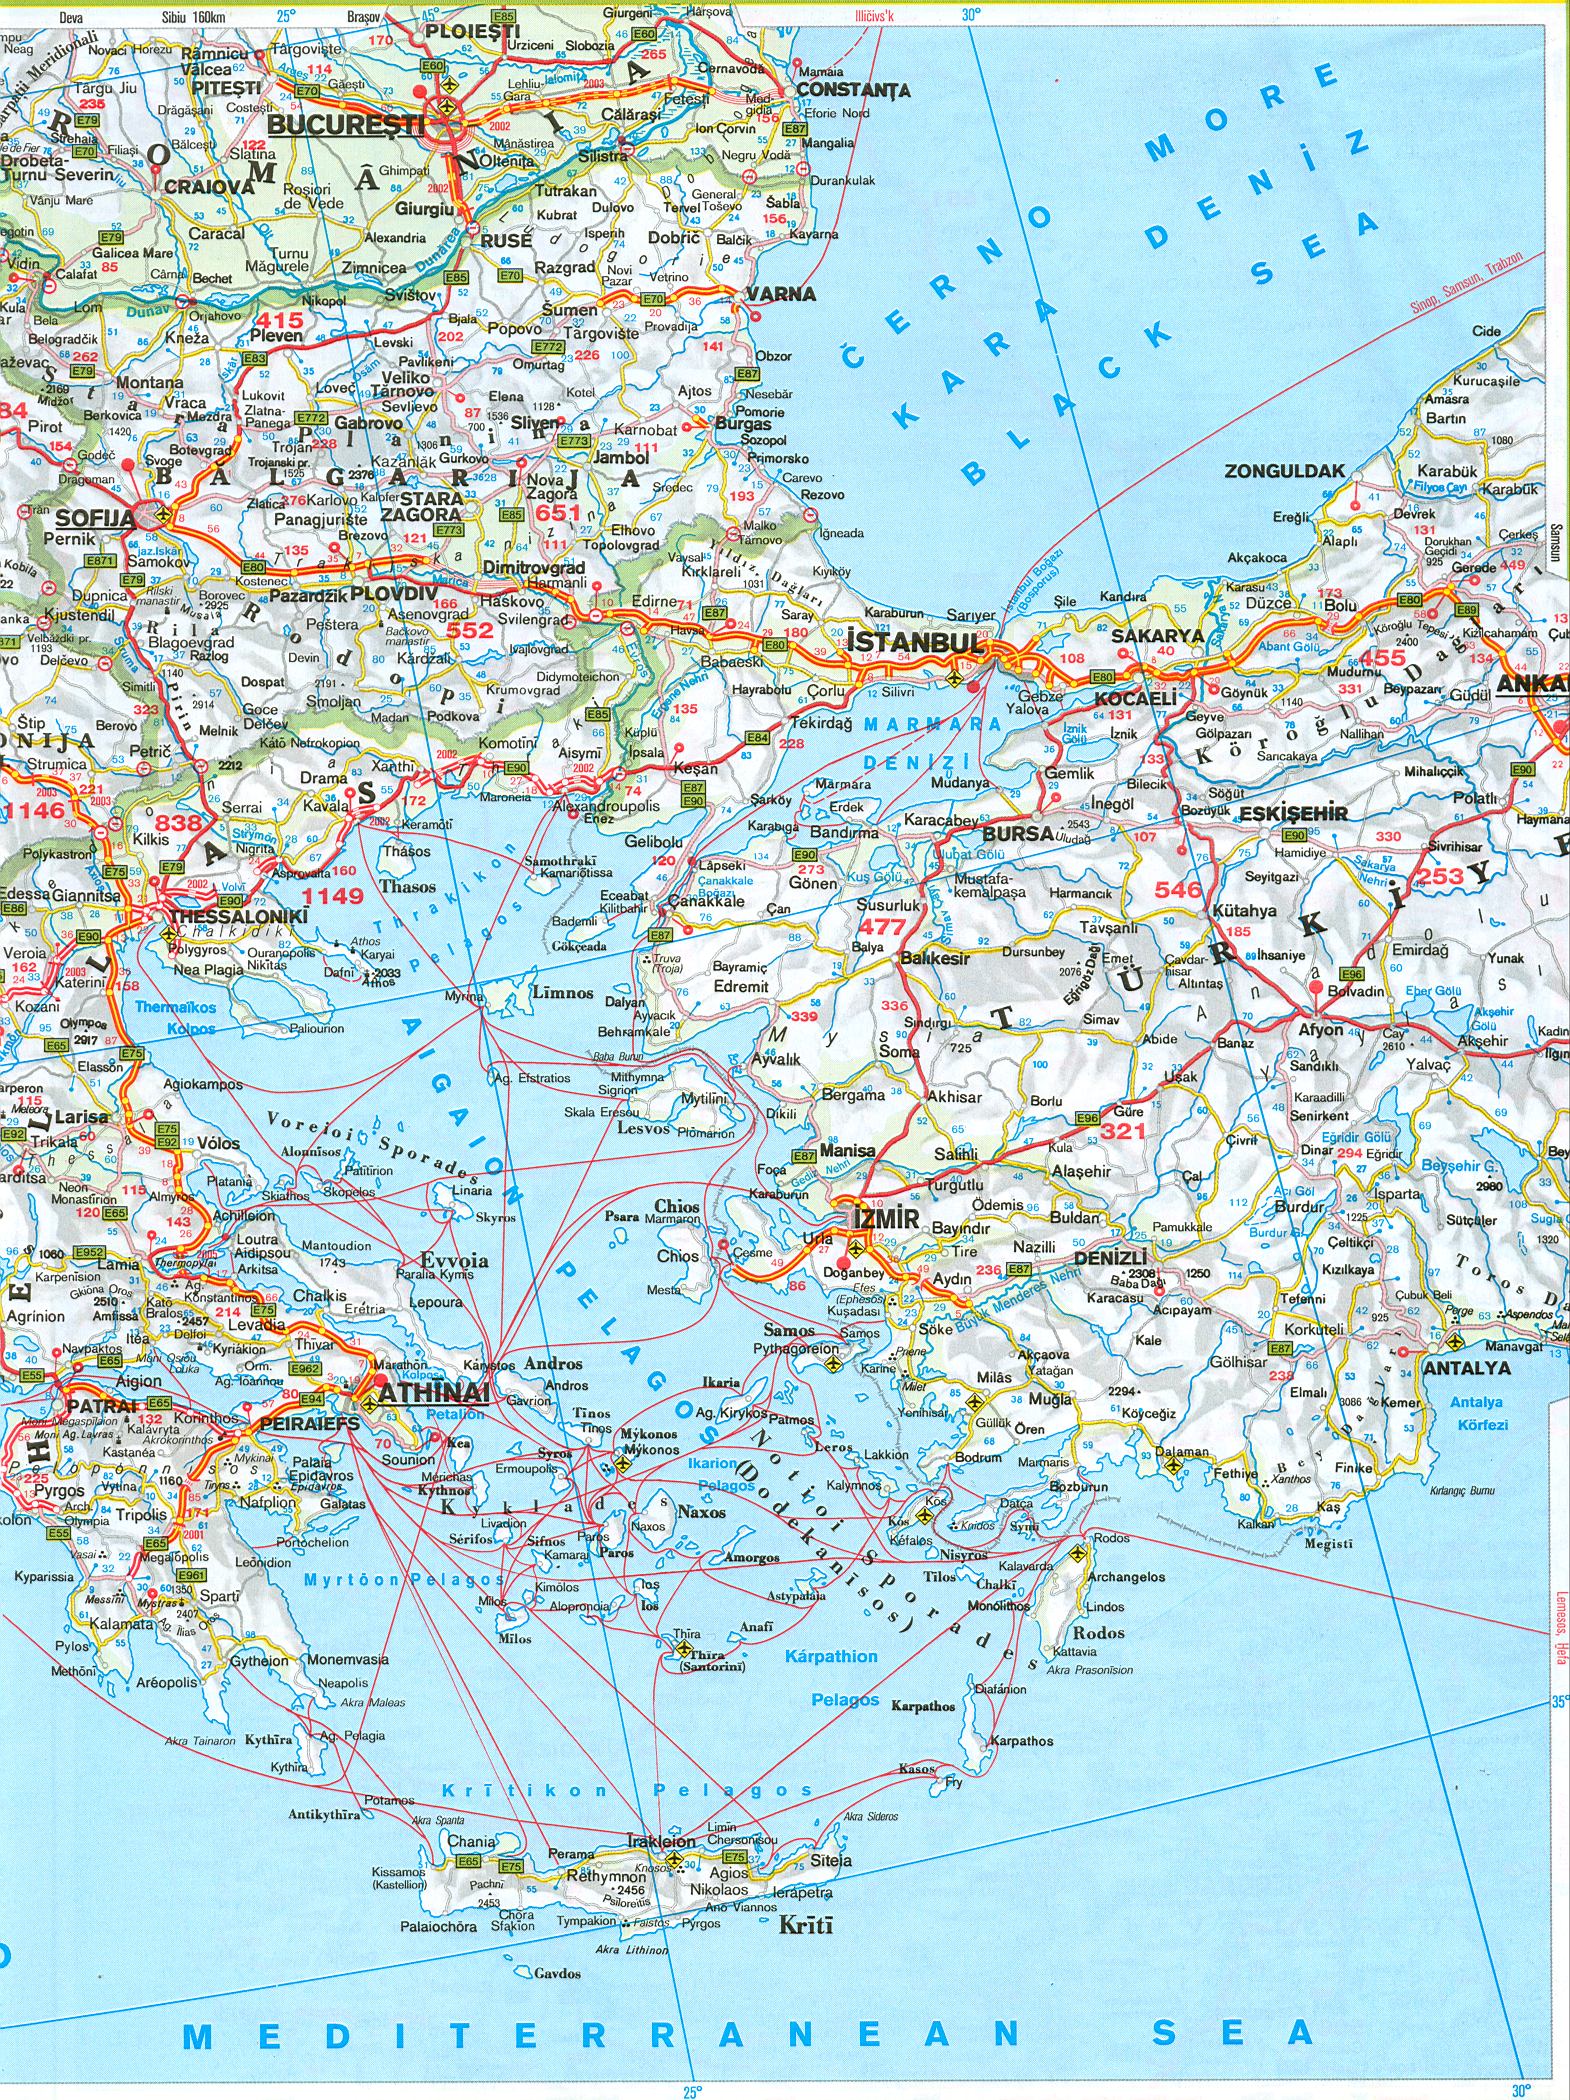 Греция на автомобильной карте. Греция, Болгария, Турция - карта автомобильных дорог масштаба 1см:45км на английском языке. Скачать бесплатно, B0 - 